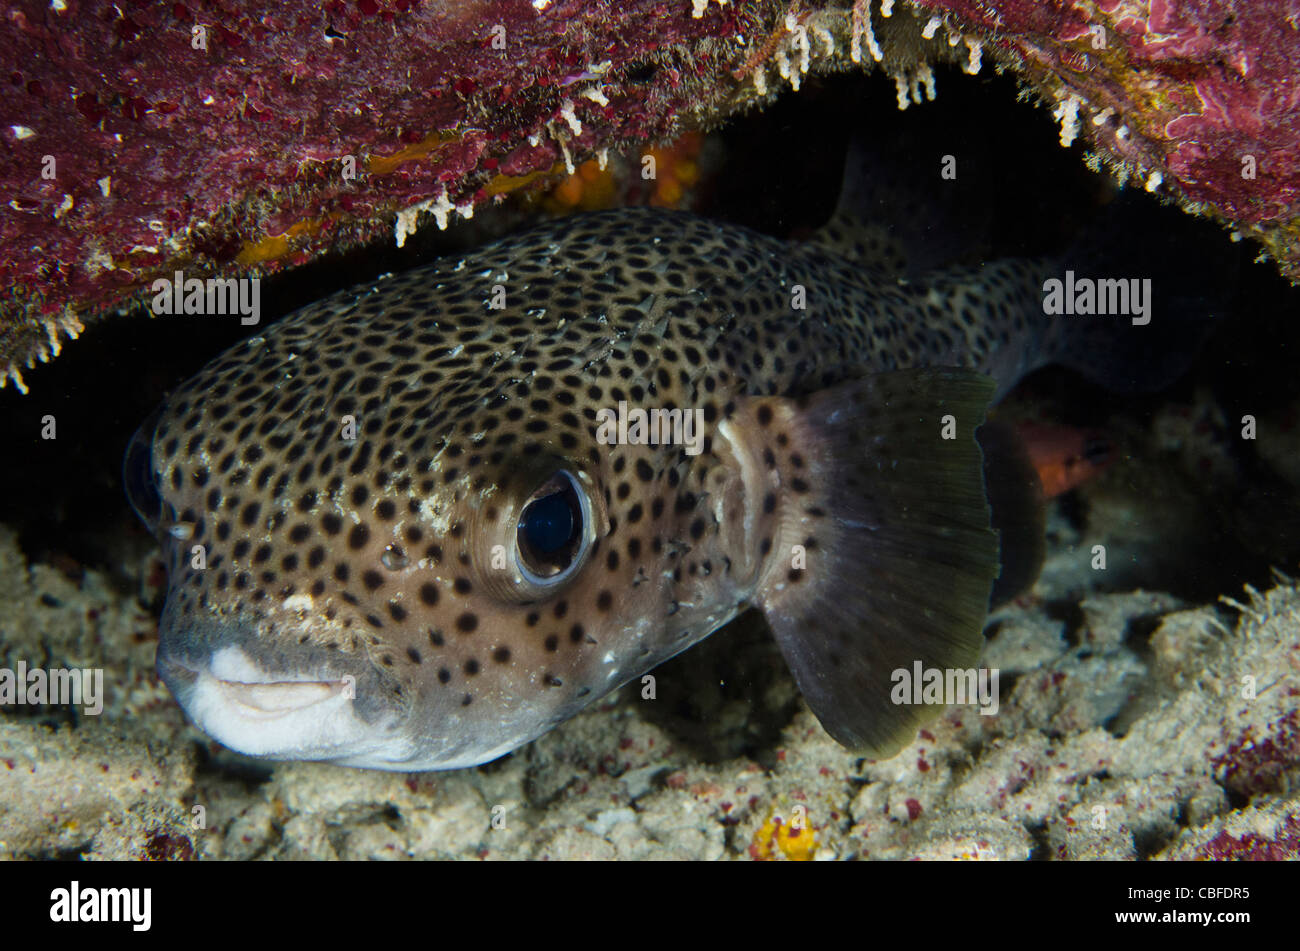 Porcupine Fish (Diodon hystrix), Bonaire, Netherlands Antilles, Caribbean Stock Photo